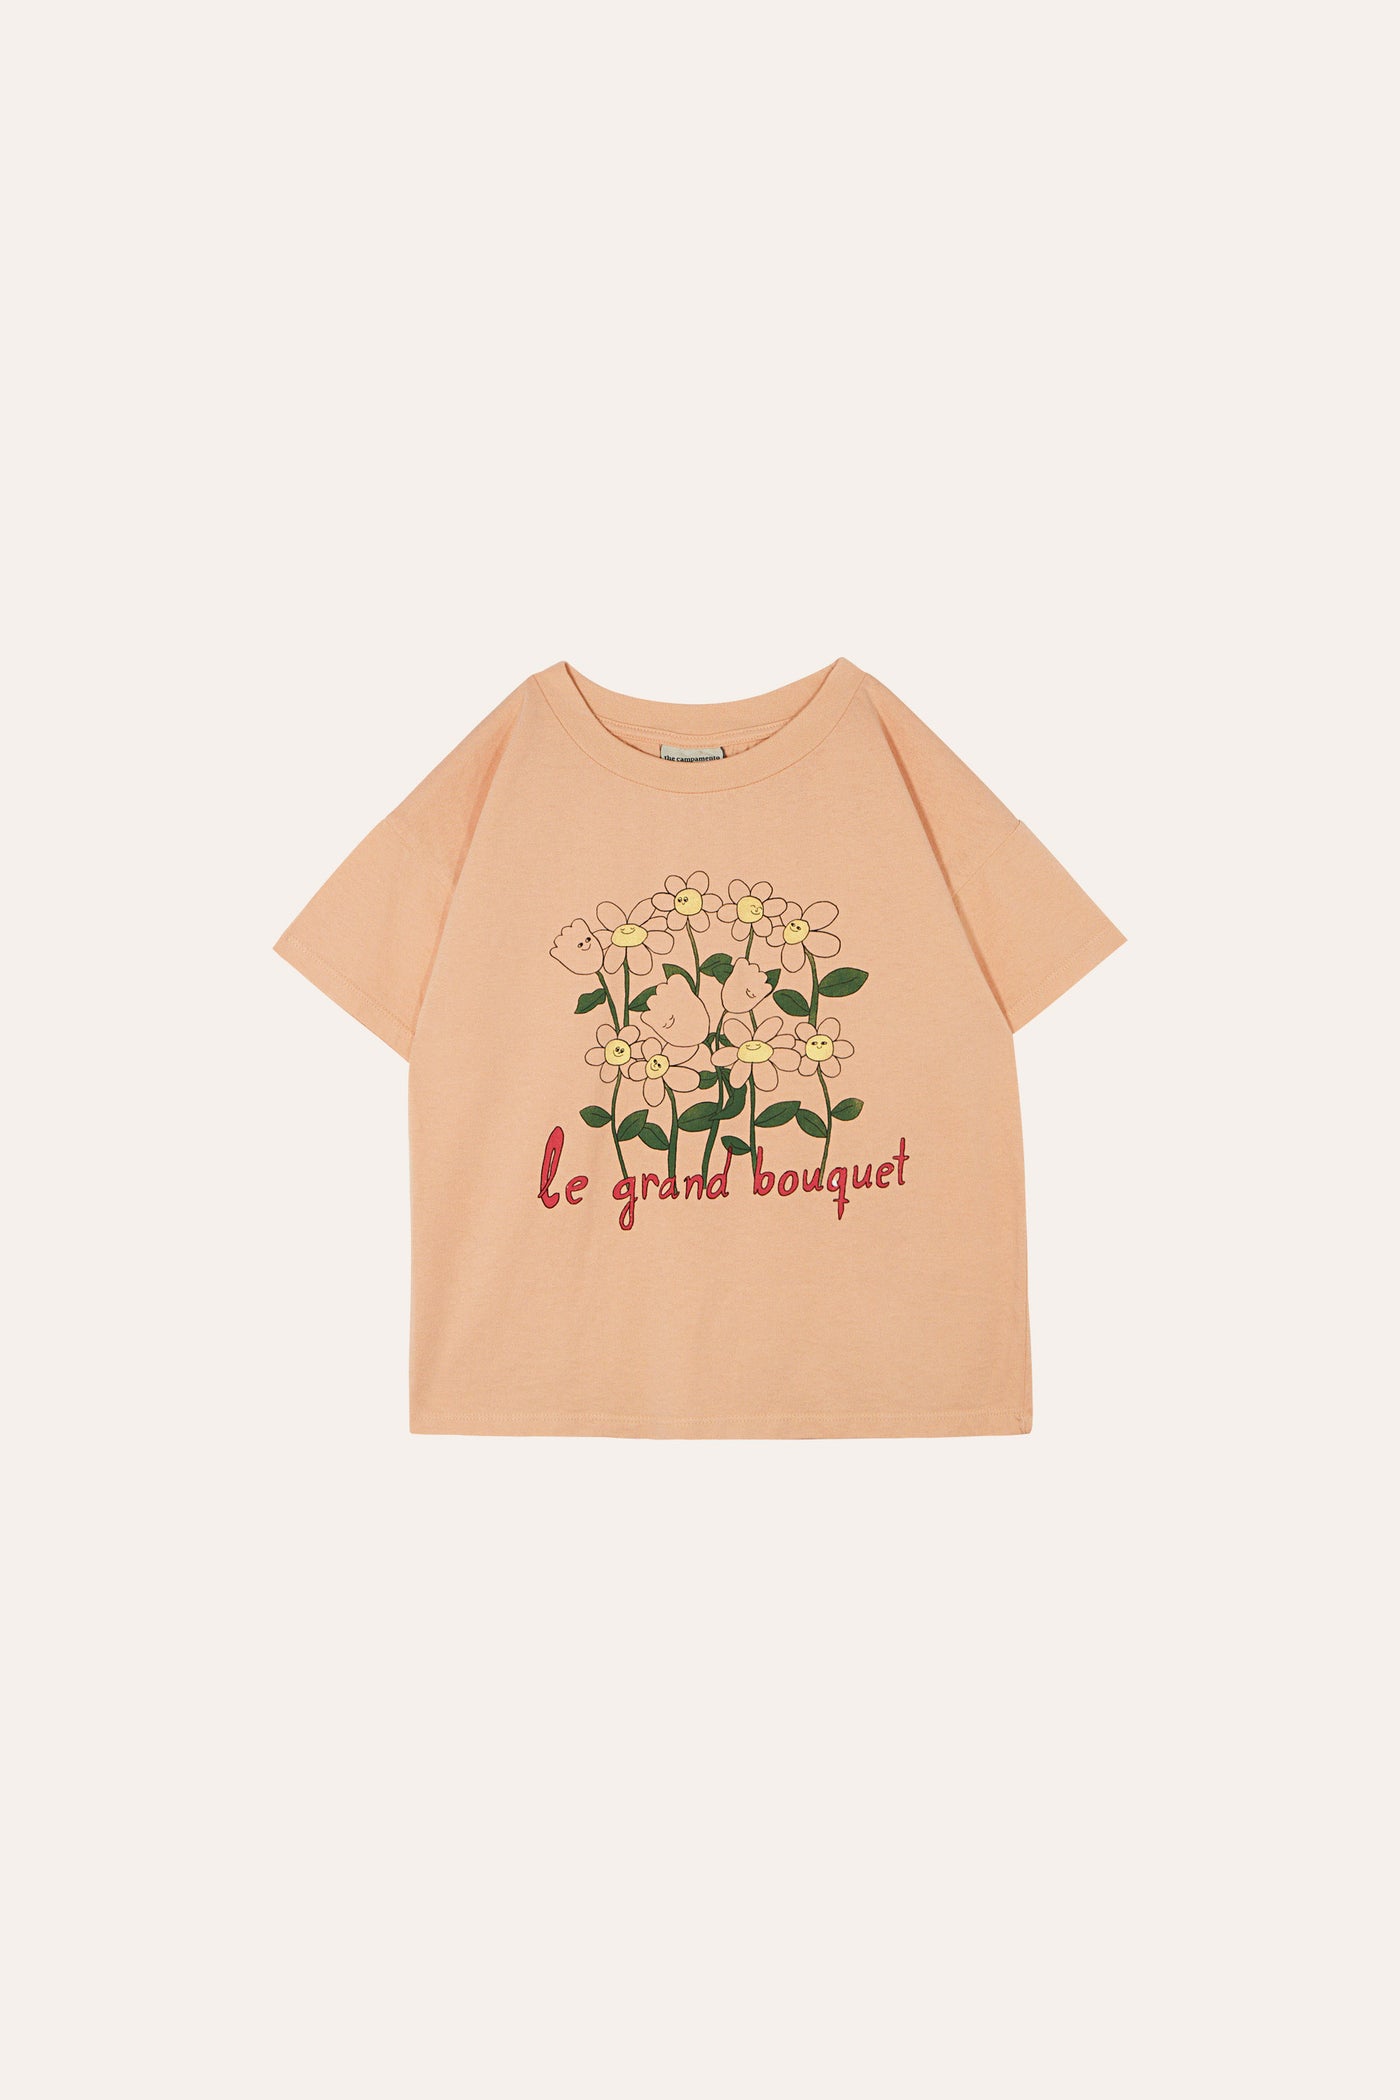 The Campamento camiseta "Le grand bouquet"